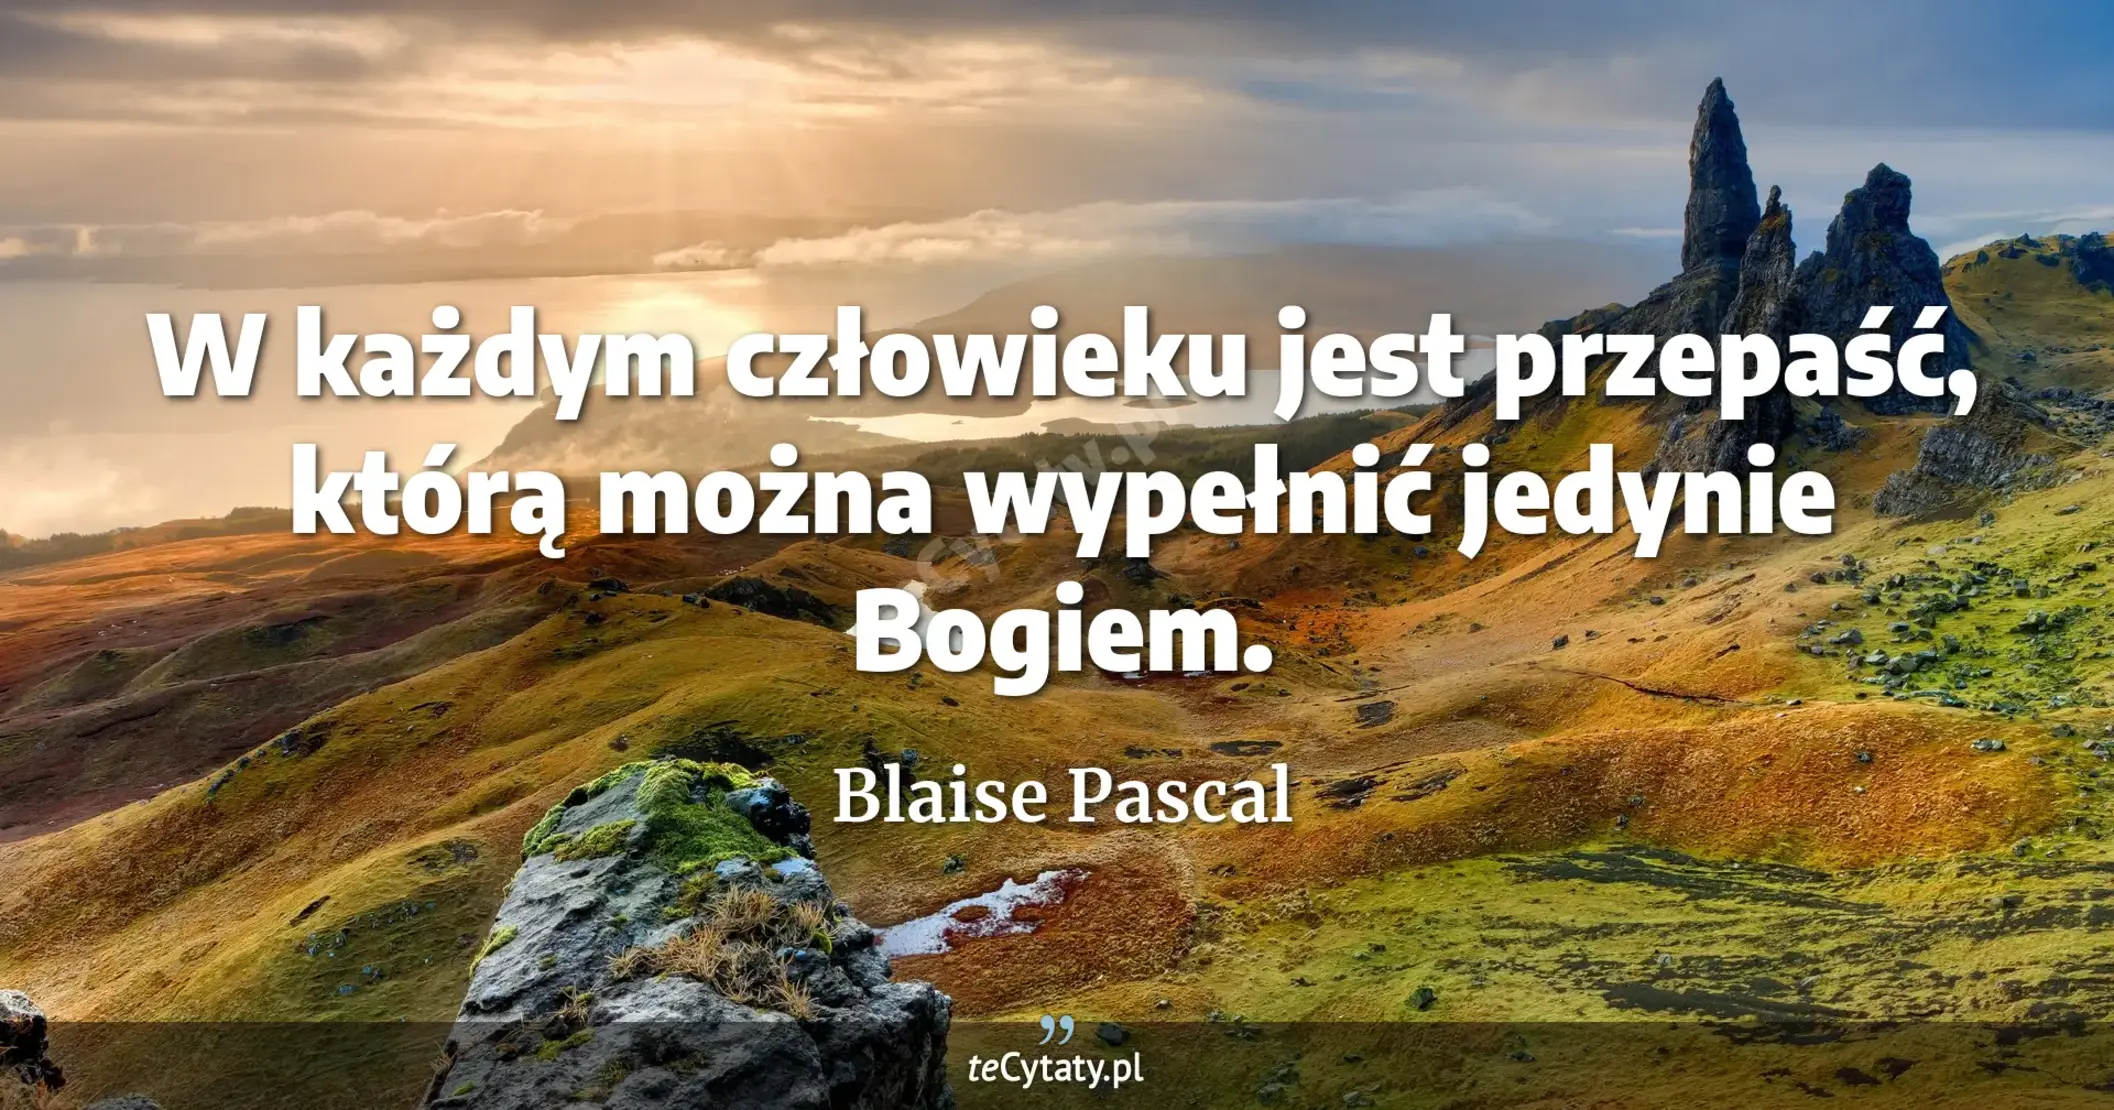 W każdym człowieku jest przepaść, którą można wypełnić jedynie Bogiem. - Blaise Pascal